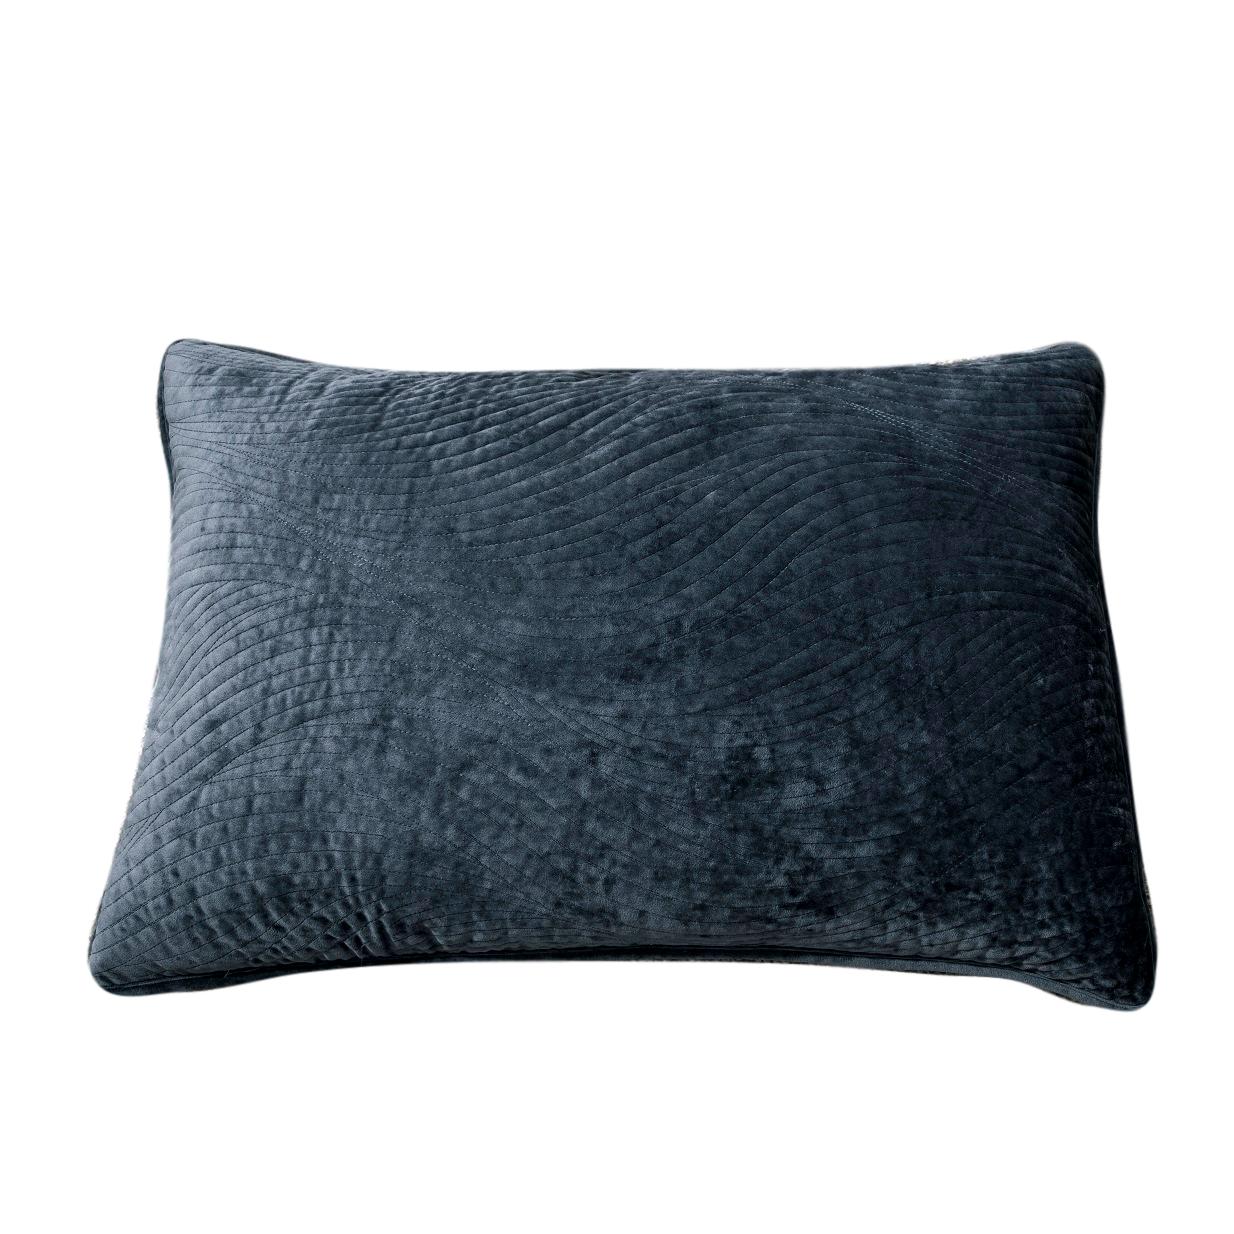 Tache Velvet Dreams Navy Blue Plush Waves Pillow Sham (JHW-852BL) - Tache Home Fashion